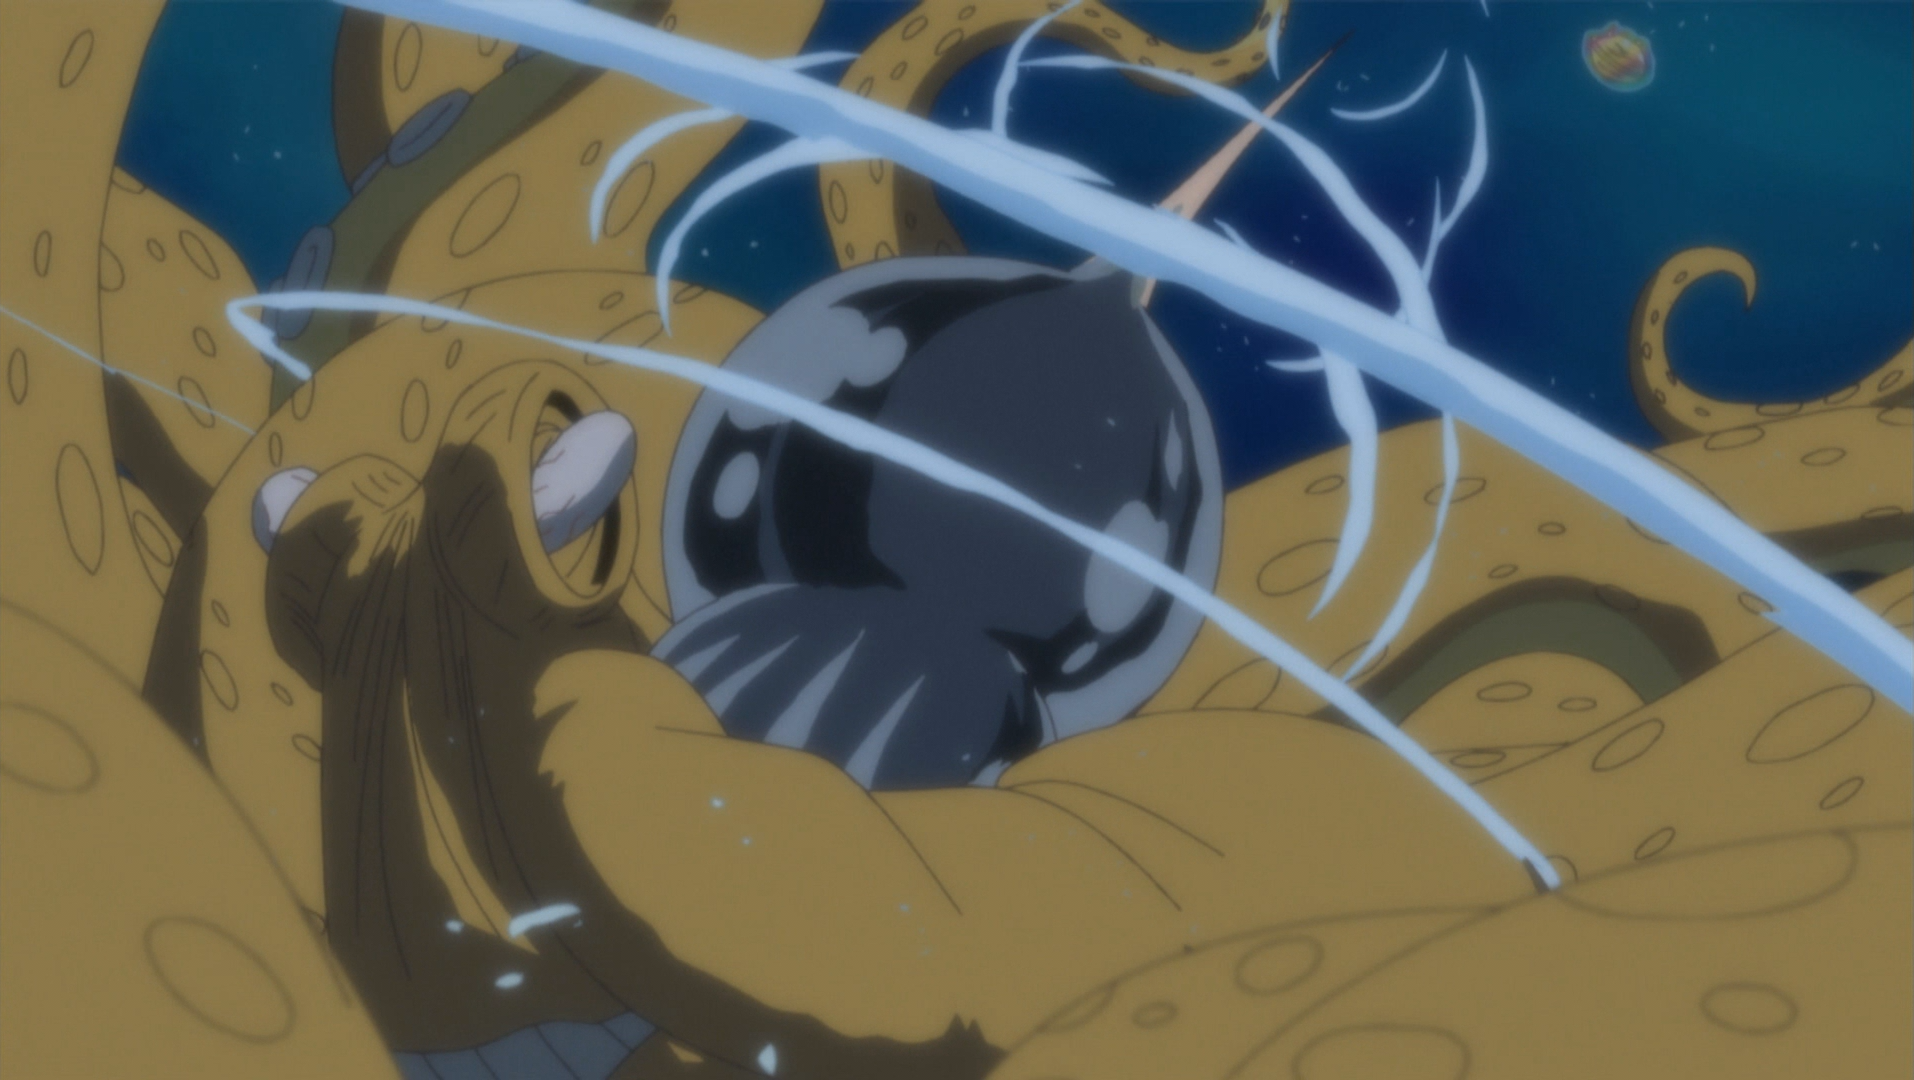 O Gear Five do Luffy é finalmente revelado!